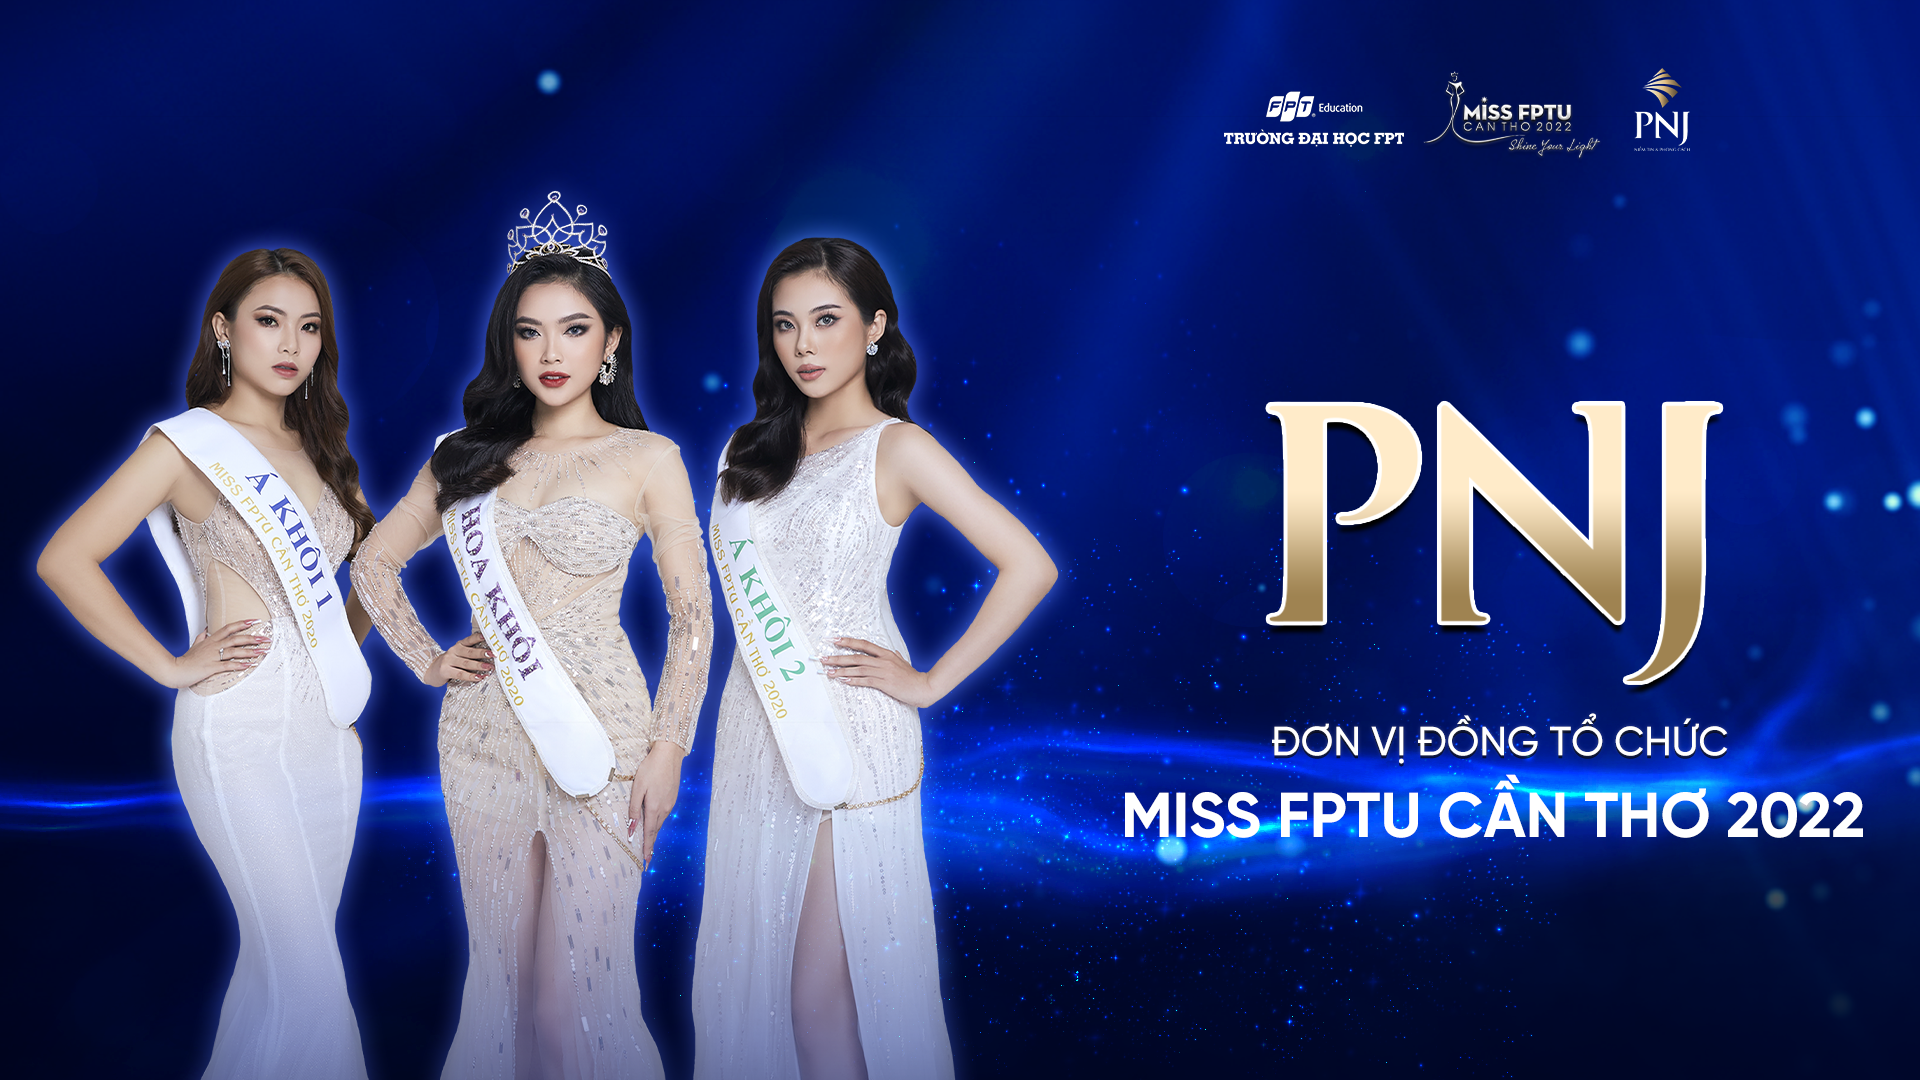 Lần đầu tiên tại ĐBSCL, PNJ trở thành Đơn vị Đồng Tổ chức cuộc thi Miss FPTU Cần Thơ 2022